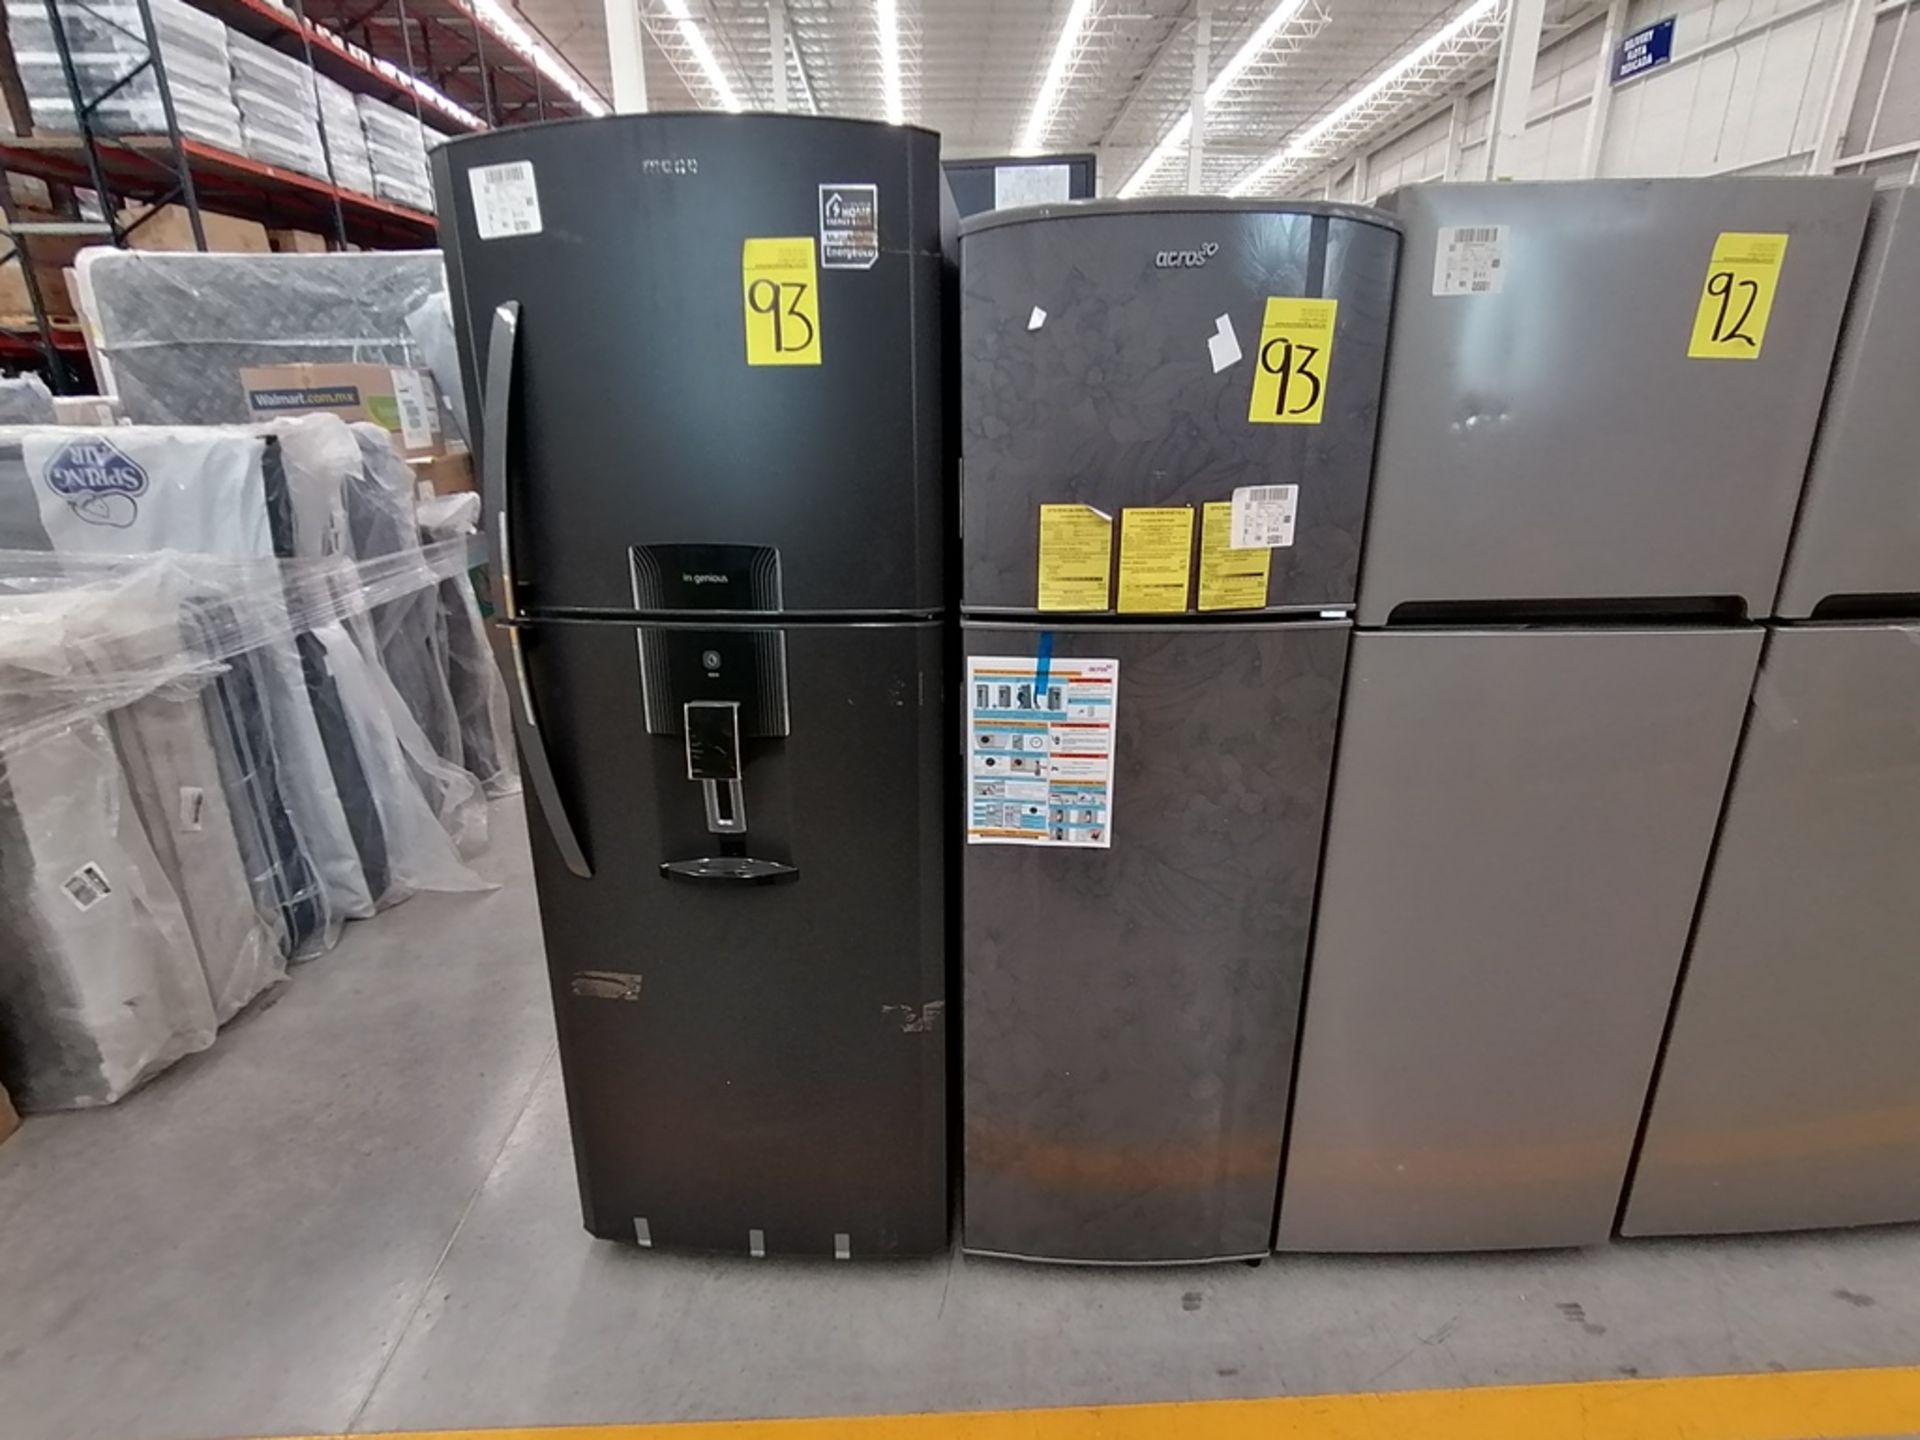 Lote de 2 Refrigeradores incluye: 1 Refrigerador, Marca Winia, Modelo DFR32210GNV, Serie MR217N104 - Image 10 of 15